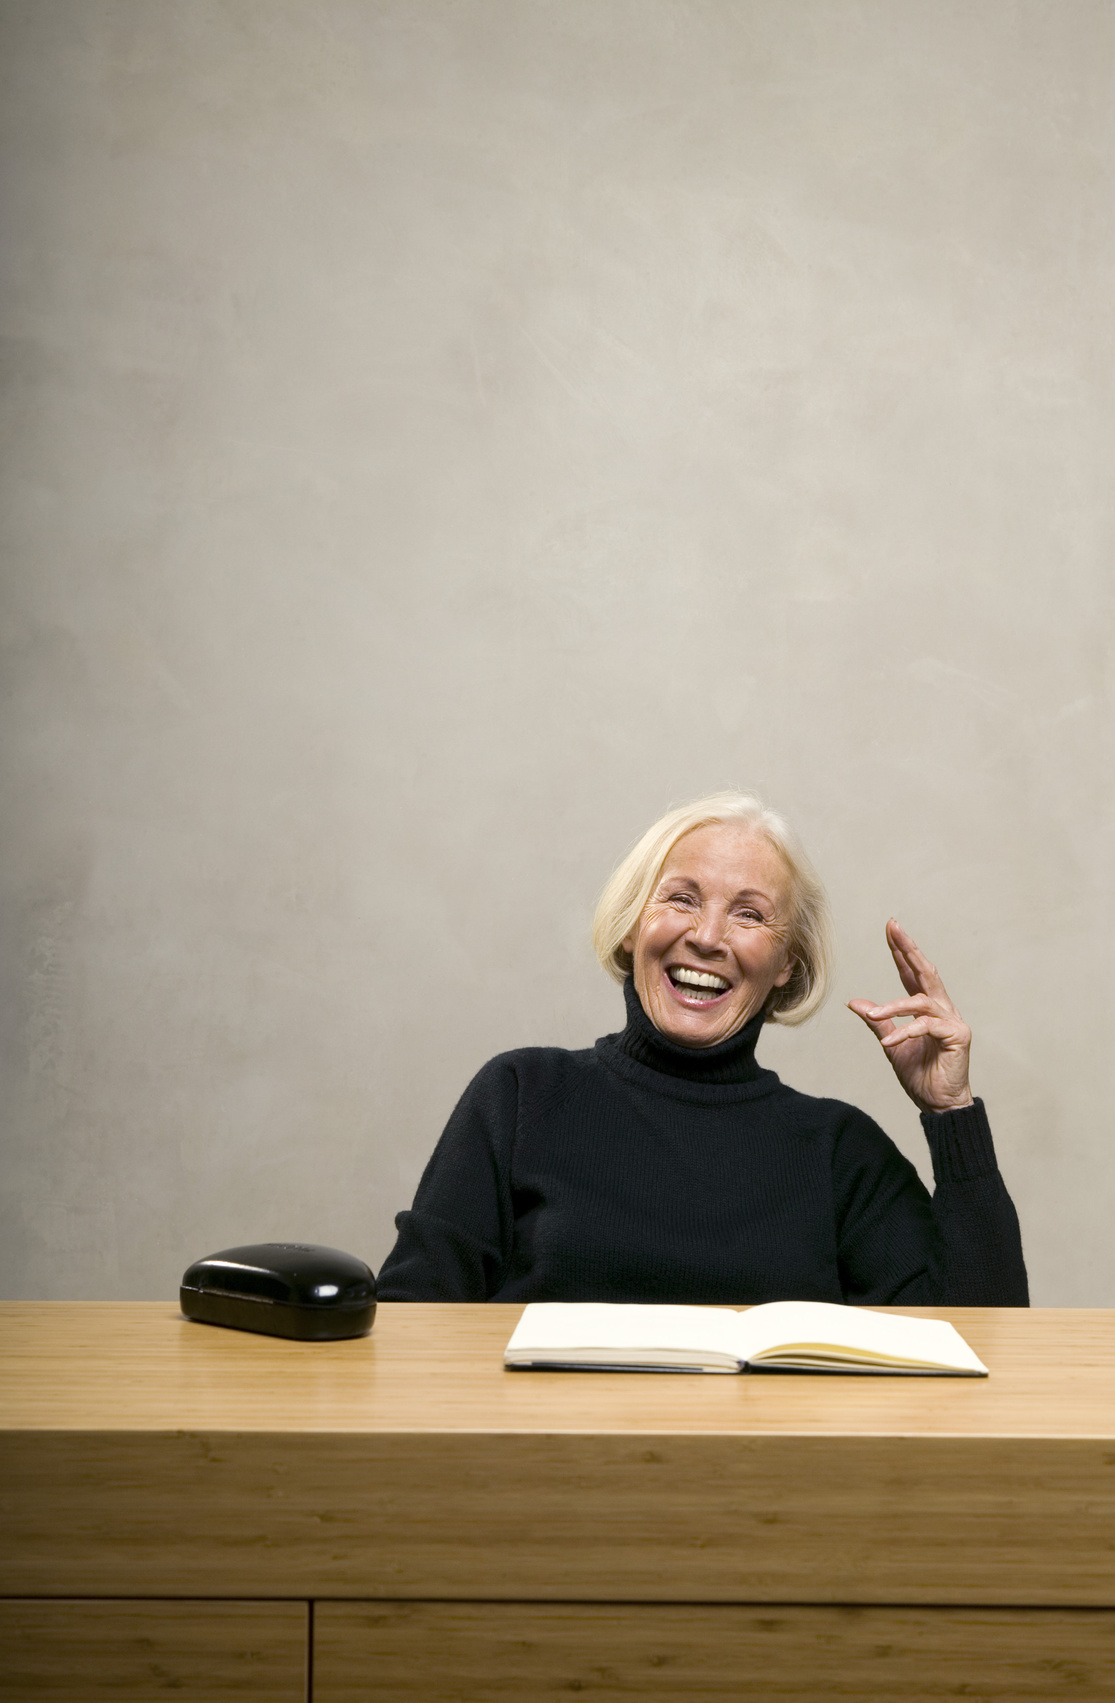 © Ältere Frau sitzt am Tisch mit Buch,lachen - tunedin - fotolia